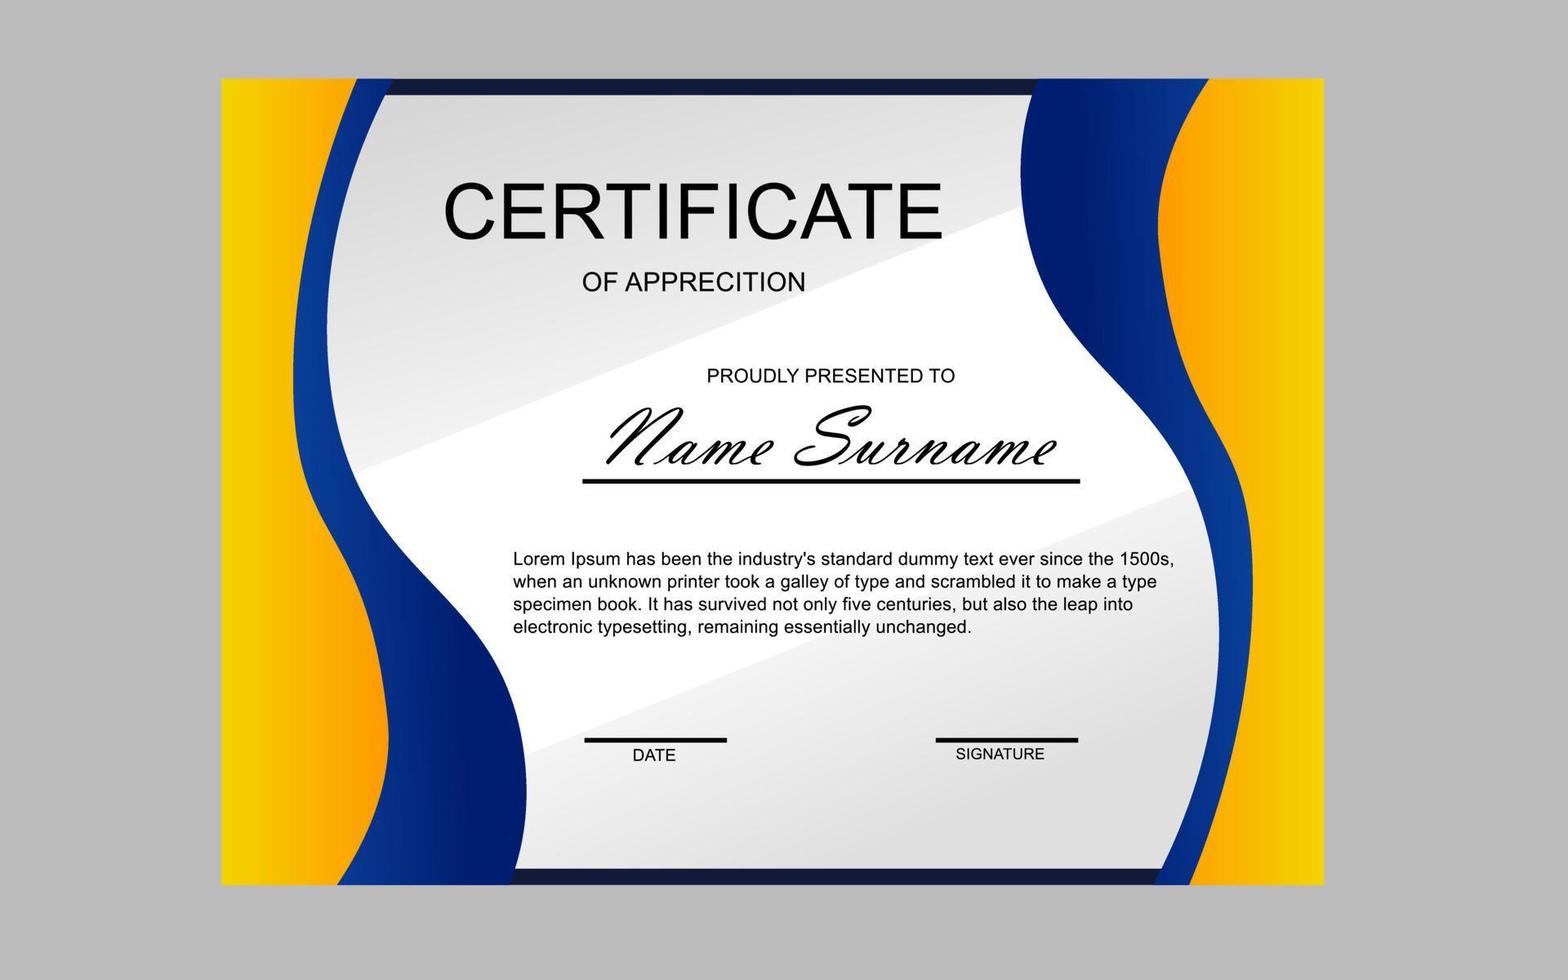 conception de certificat dans un style moderne jaune et bleu vecteur